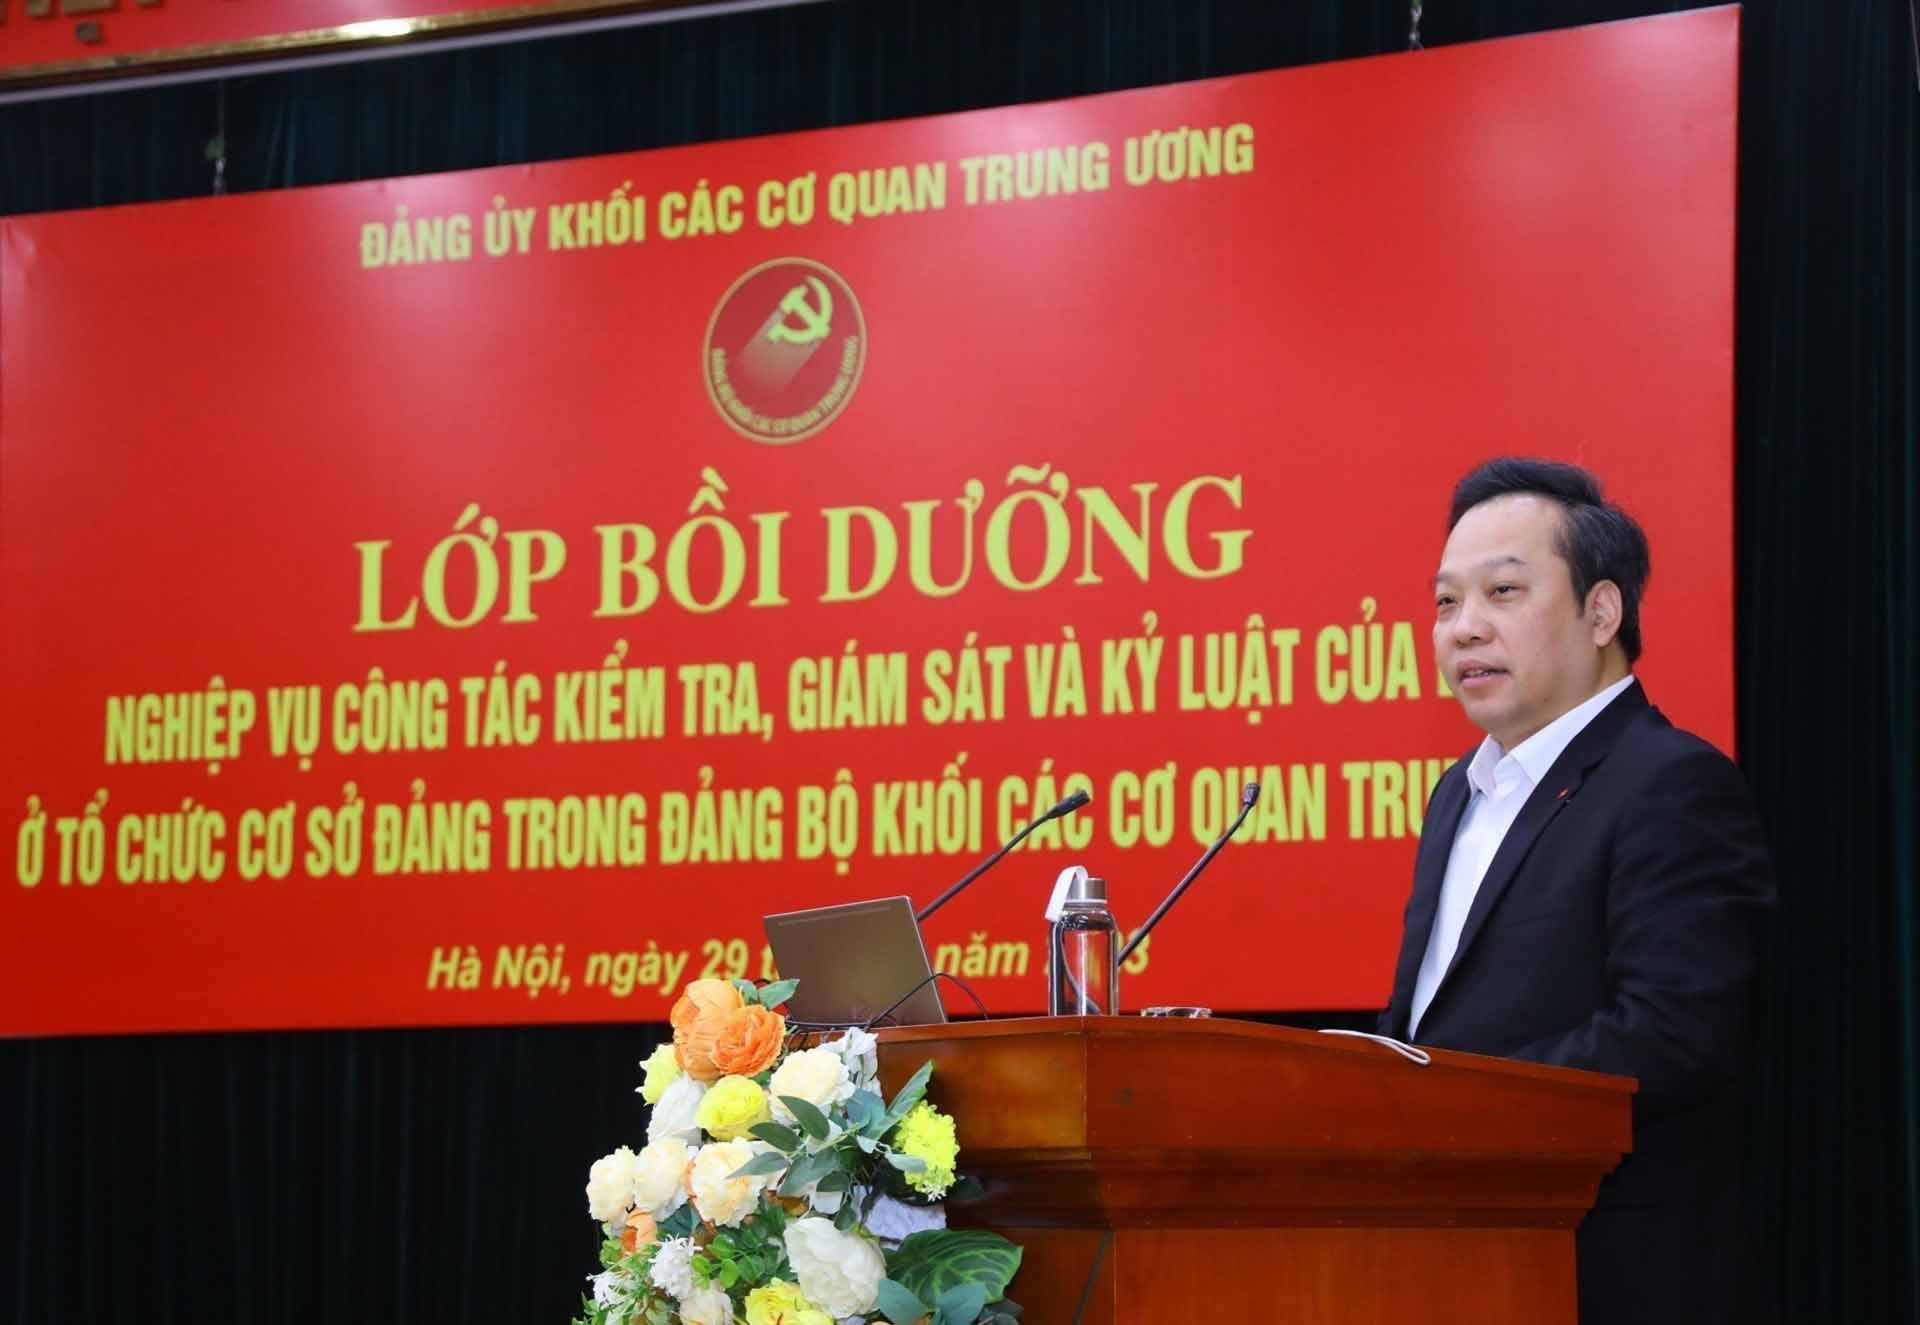 Phó Bí thư Đảng ủy Khối các cơ quan Trung ương Đỗ Việt Hà phát biểu khai mạc. (Nguồn: TTXVN)